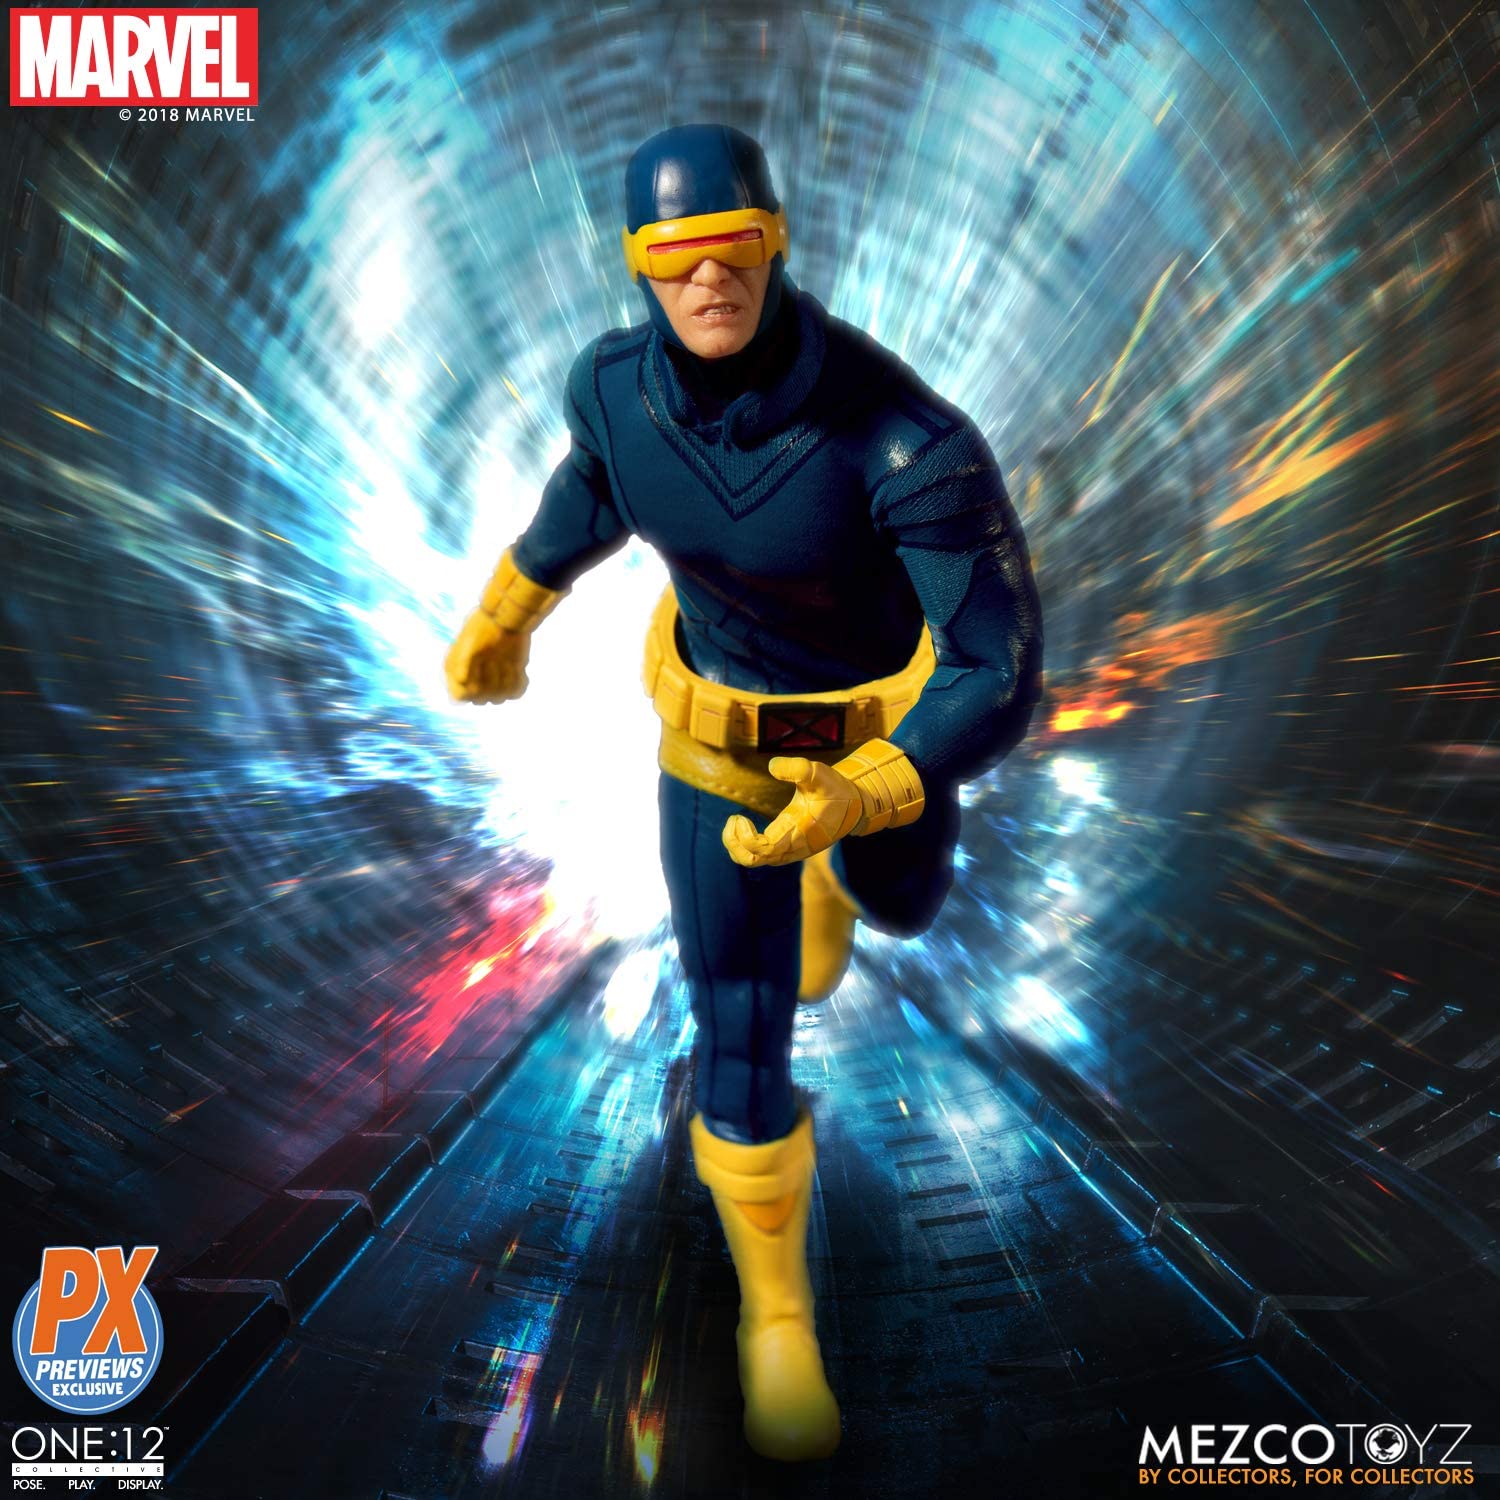 Mezco Toyz ONE:12 Collective Marvel X-Men Cyclops PX Ver. 1/12